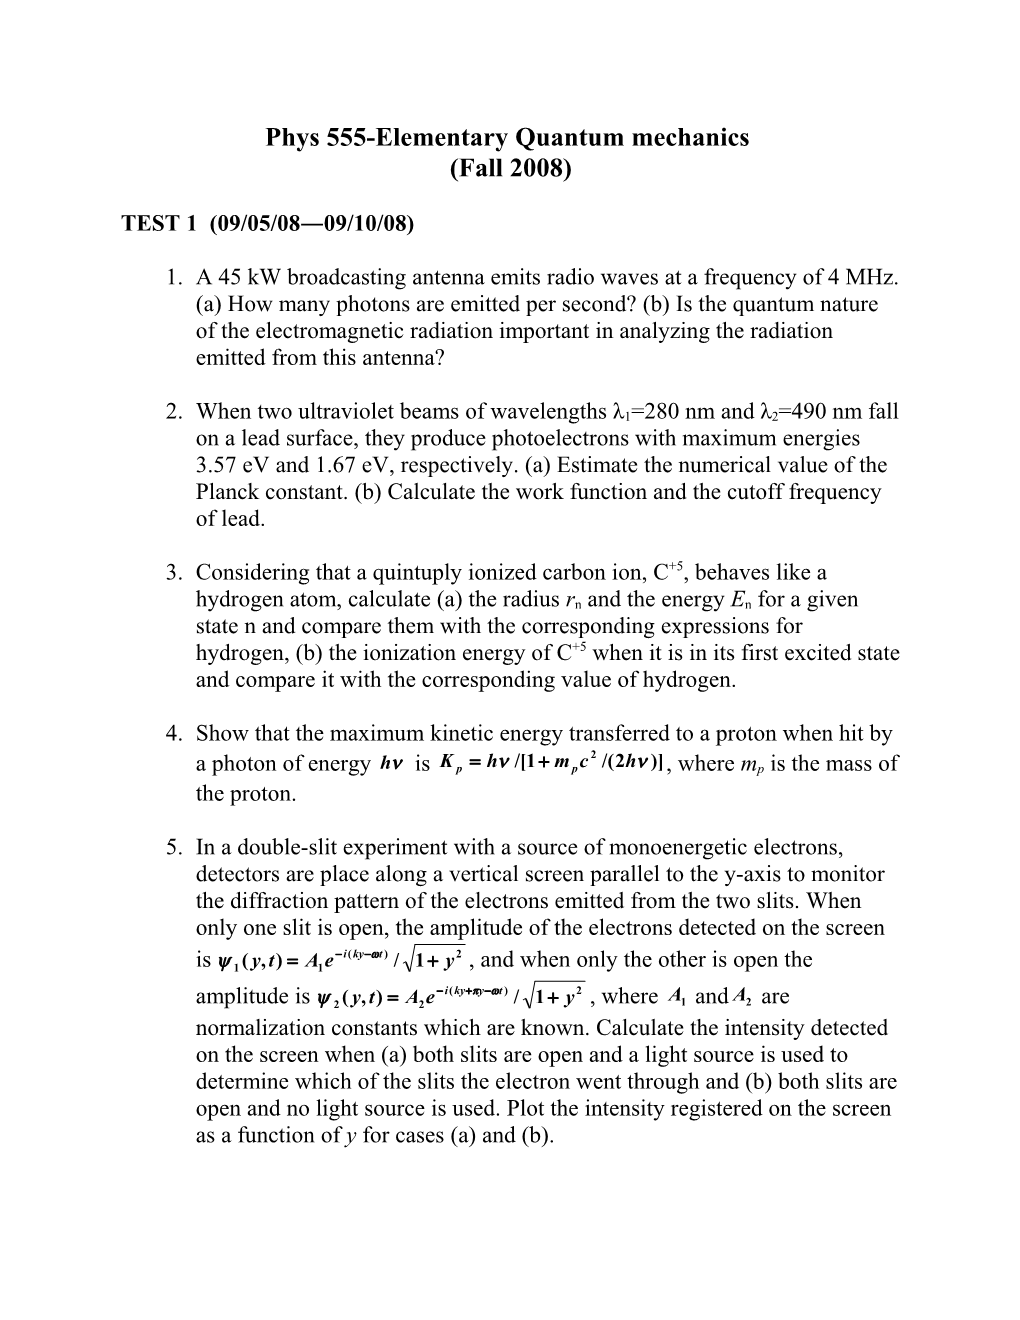 Homework of Phys 621-Quantum Mechanics I (Fall 2007)